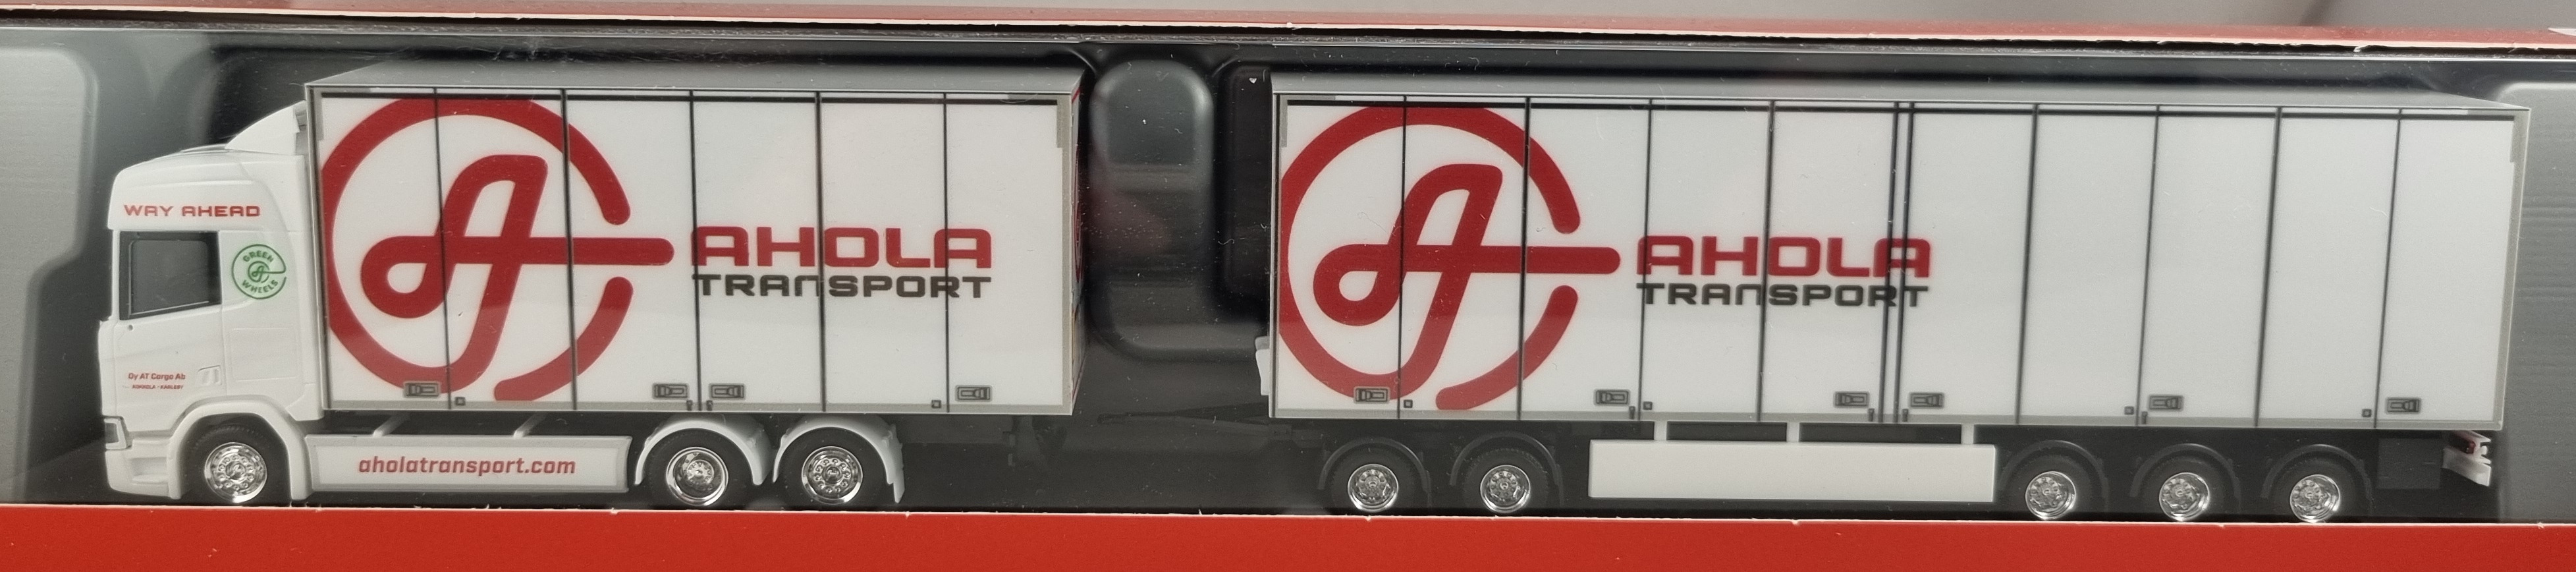 Herpa 315678, Scania Bil och släp Ahola transport, Skala H0, H30